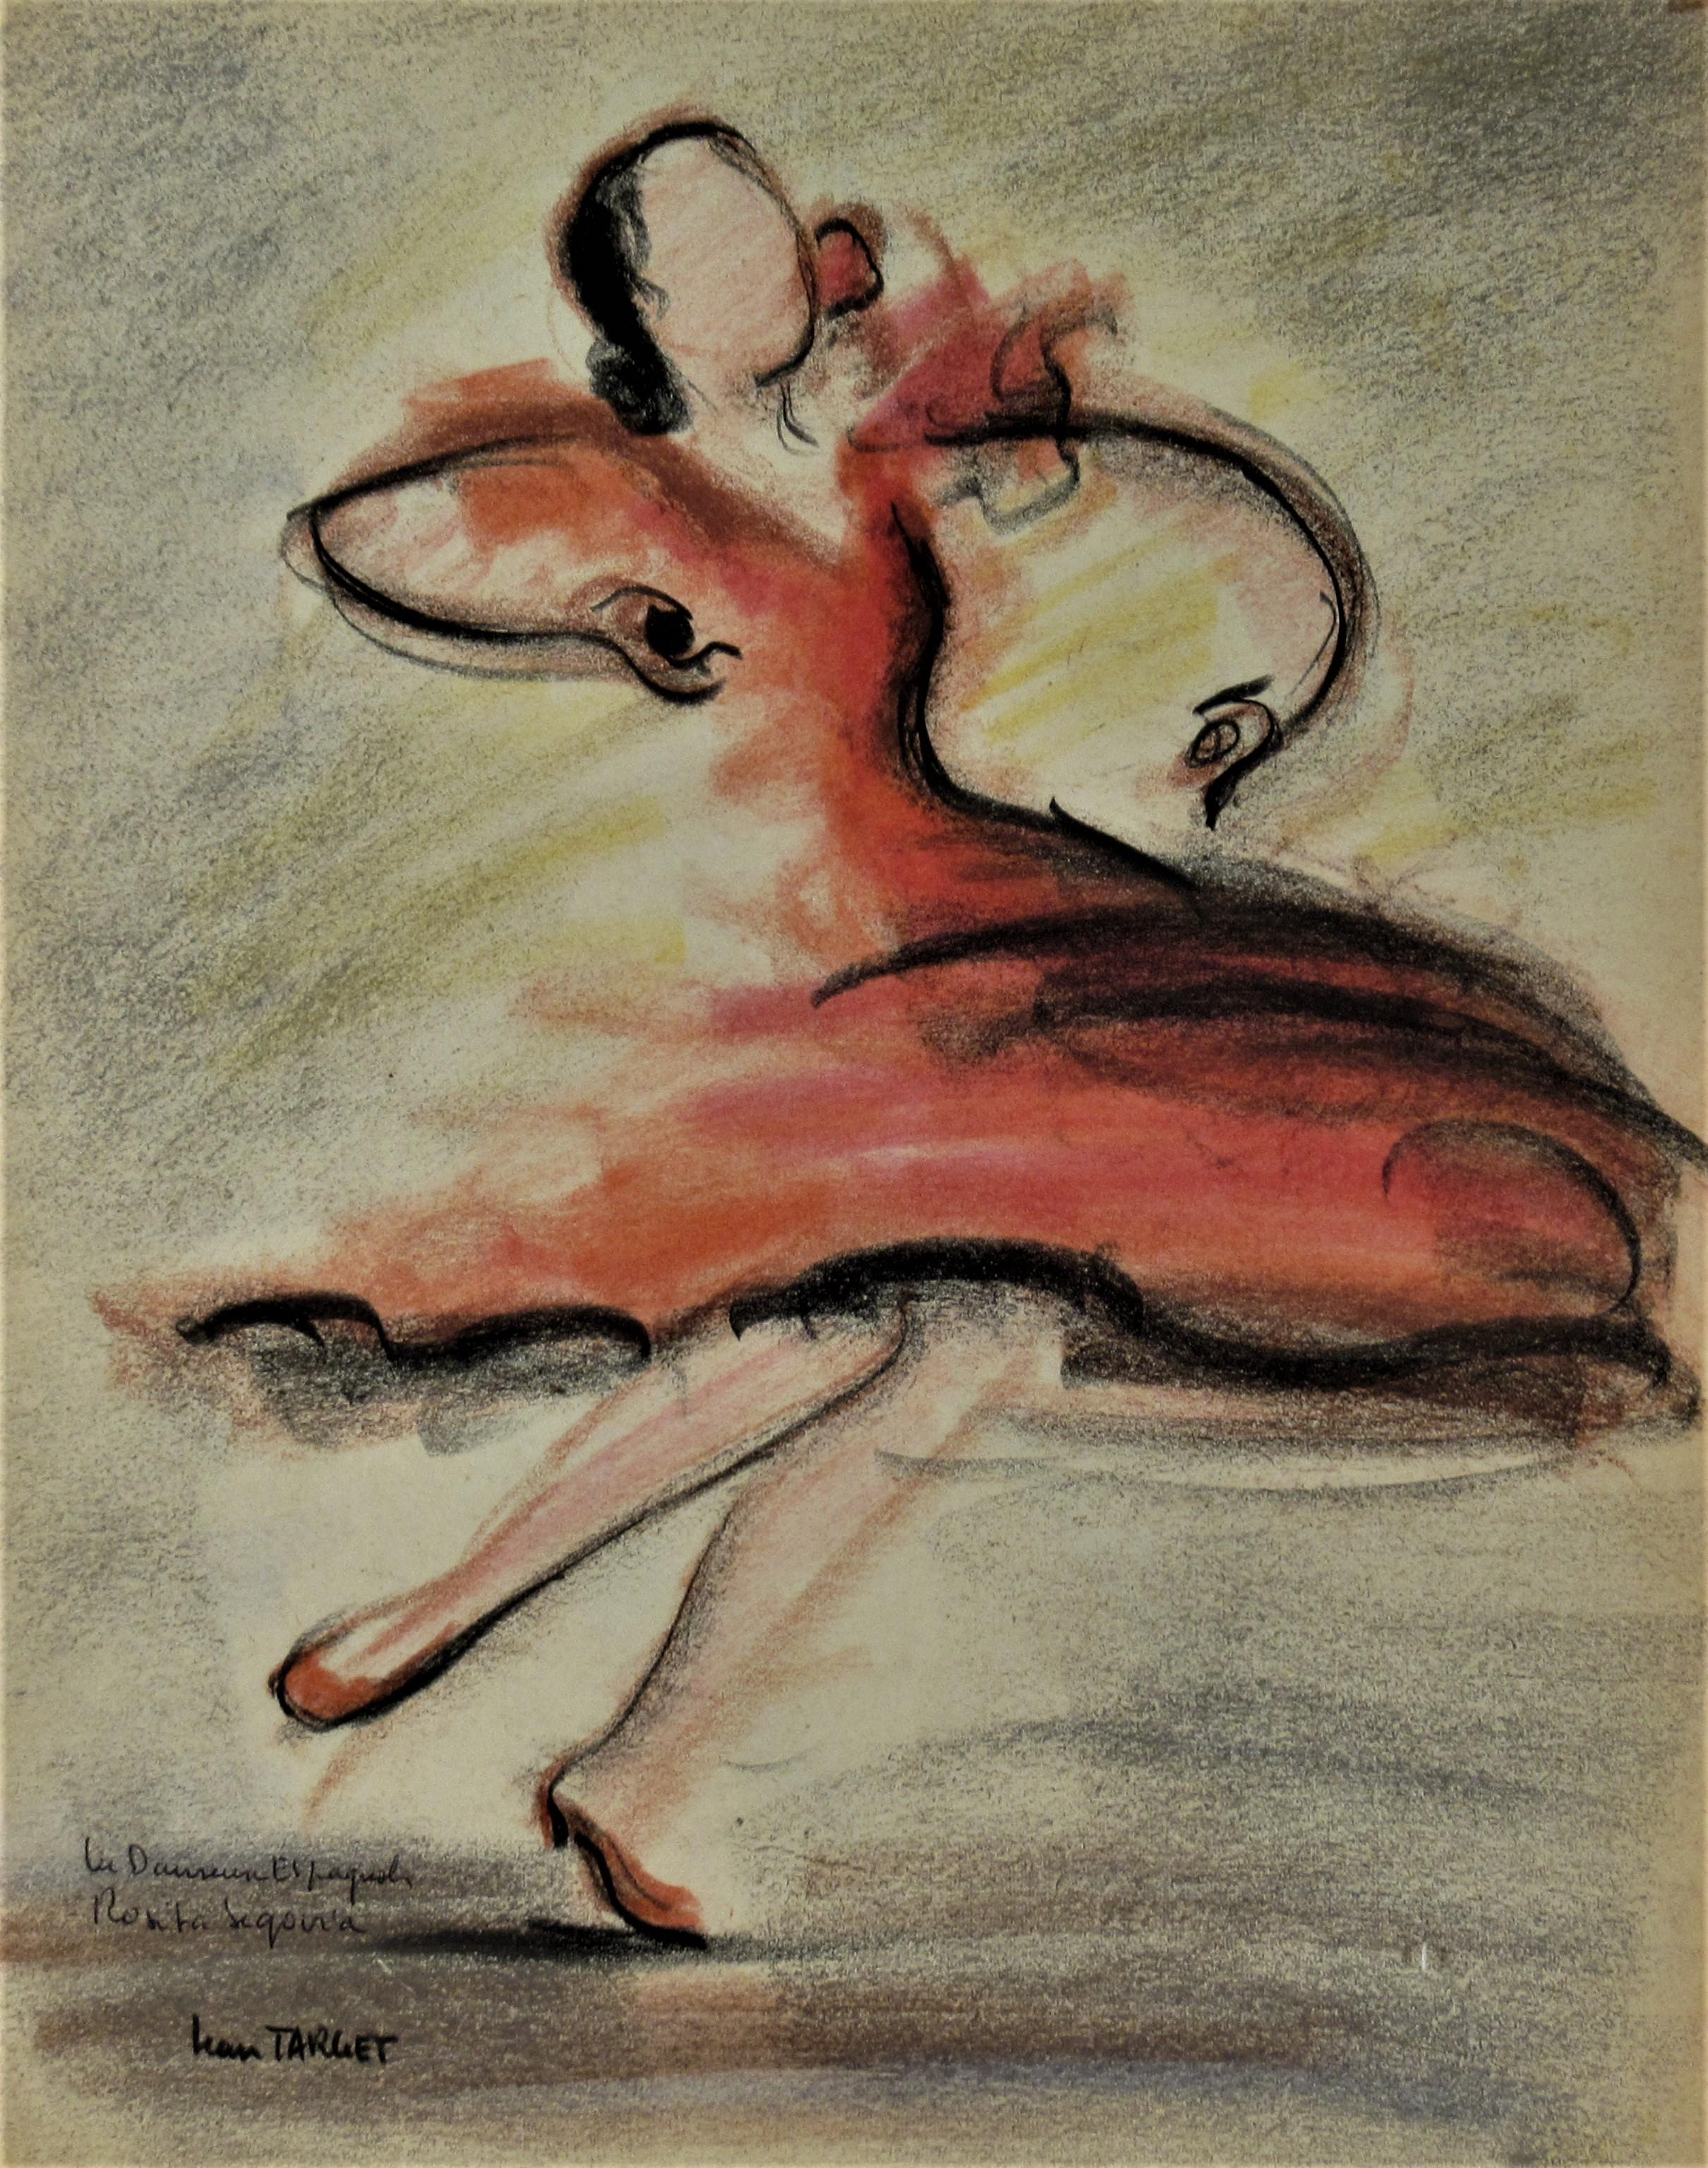 Figurative Art Jean Target - La Danseuse Espagnol Rosita Segovia (La danseuse espagnole Rosita Segovia)